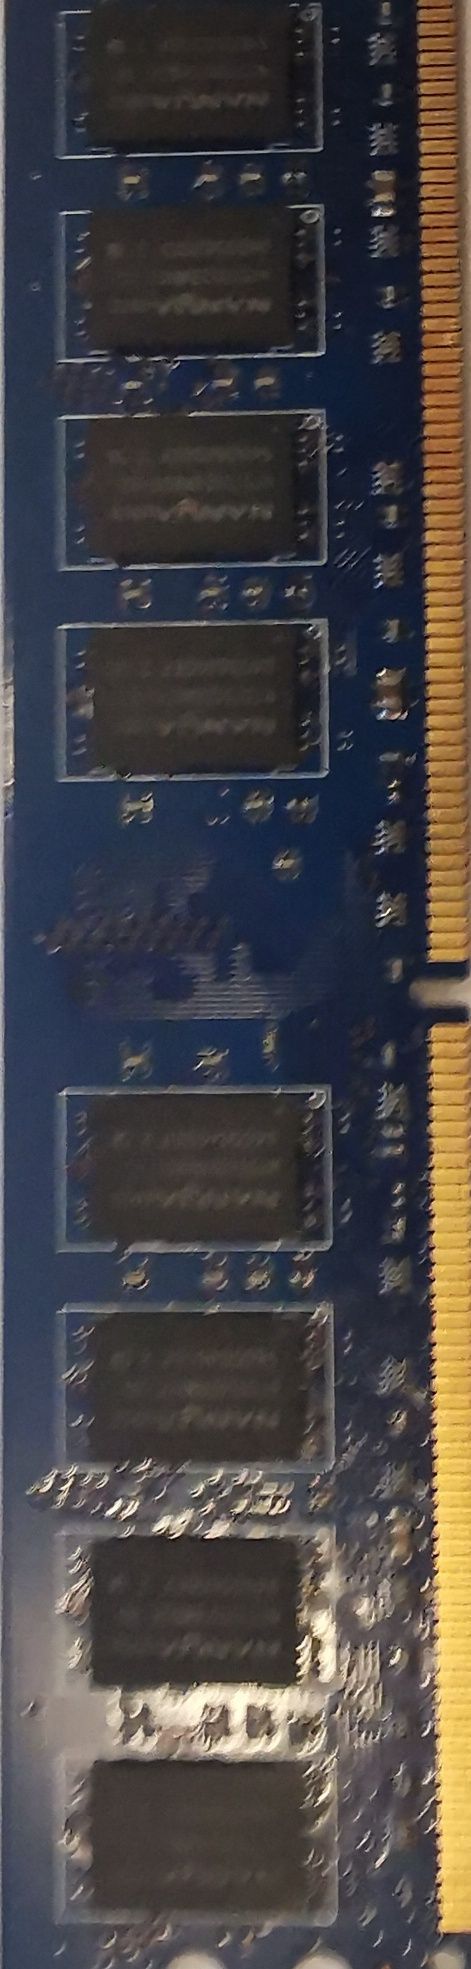 Pamięć RAM DDR2 2GB (1x2GB) Goodram 800 Mhz CL6